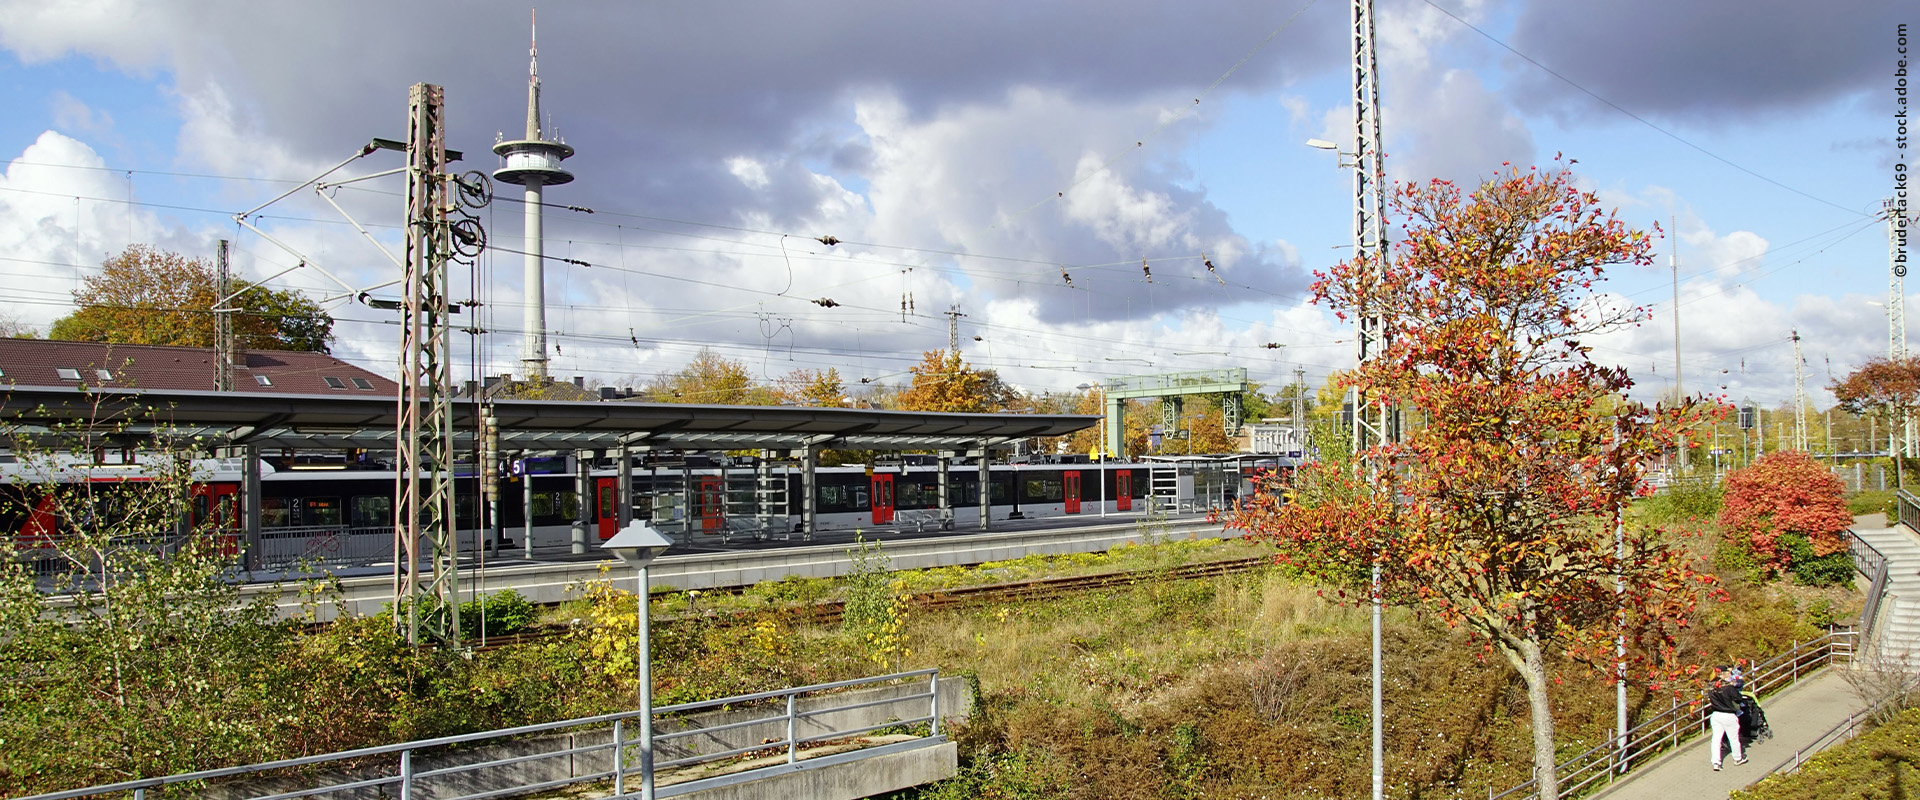 Blick auf Bahnsteig am Bahnhof Wesel, RE 19 im Hintergrund